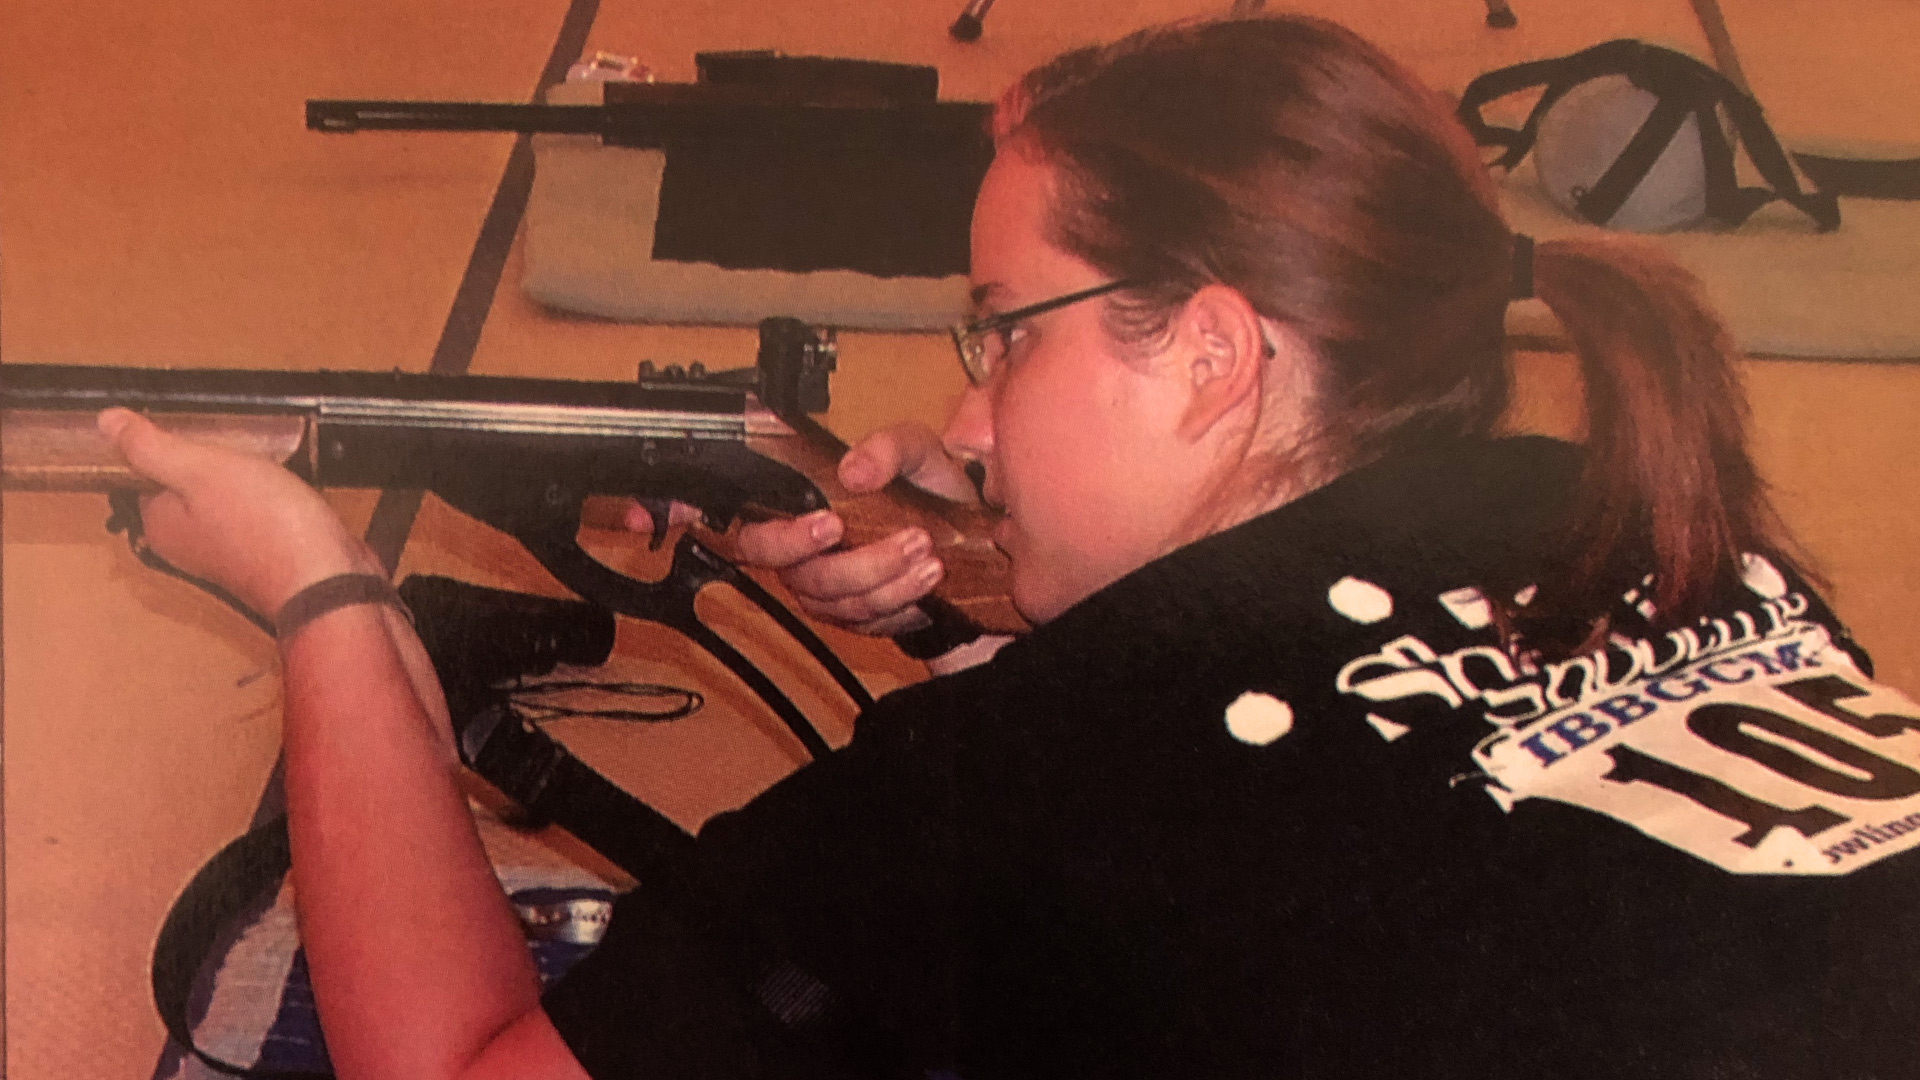 Kelsey Rasor at 2005 BB gun nationals